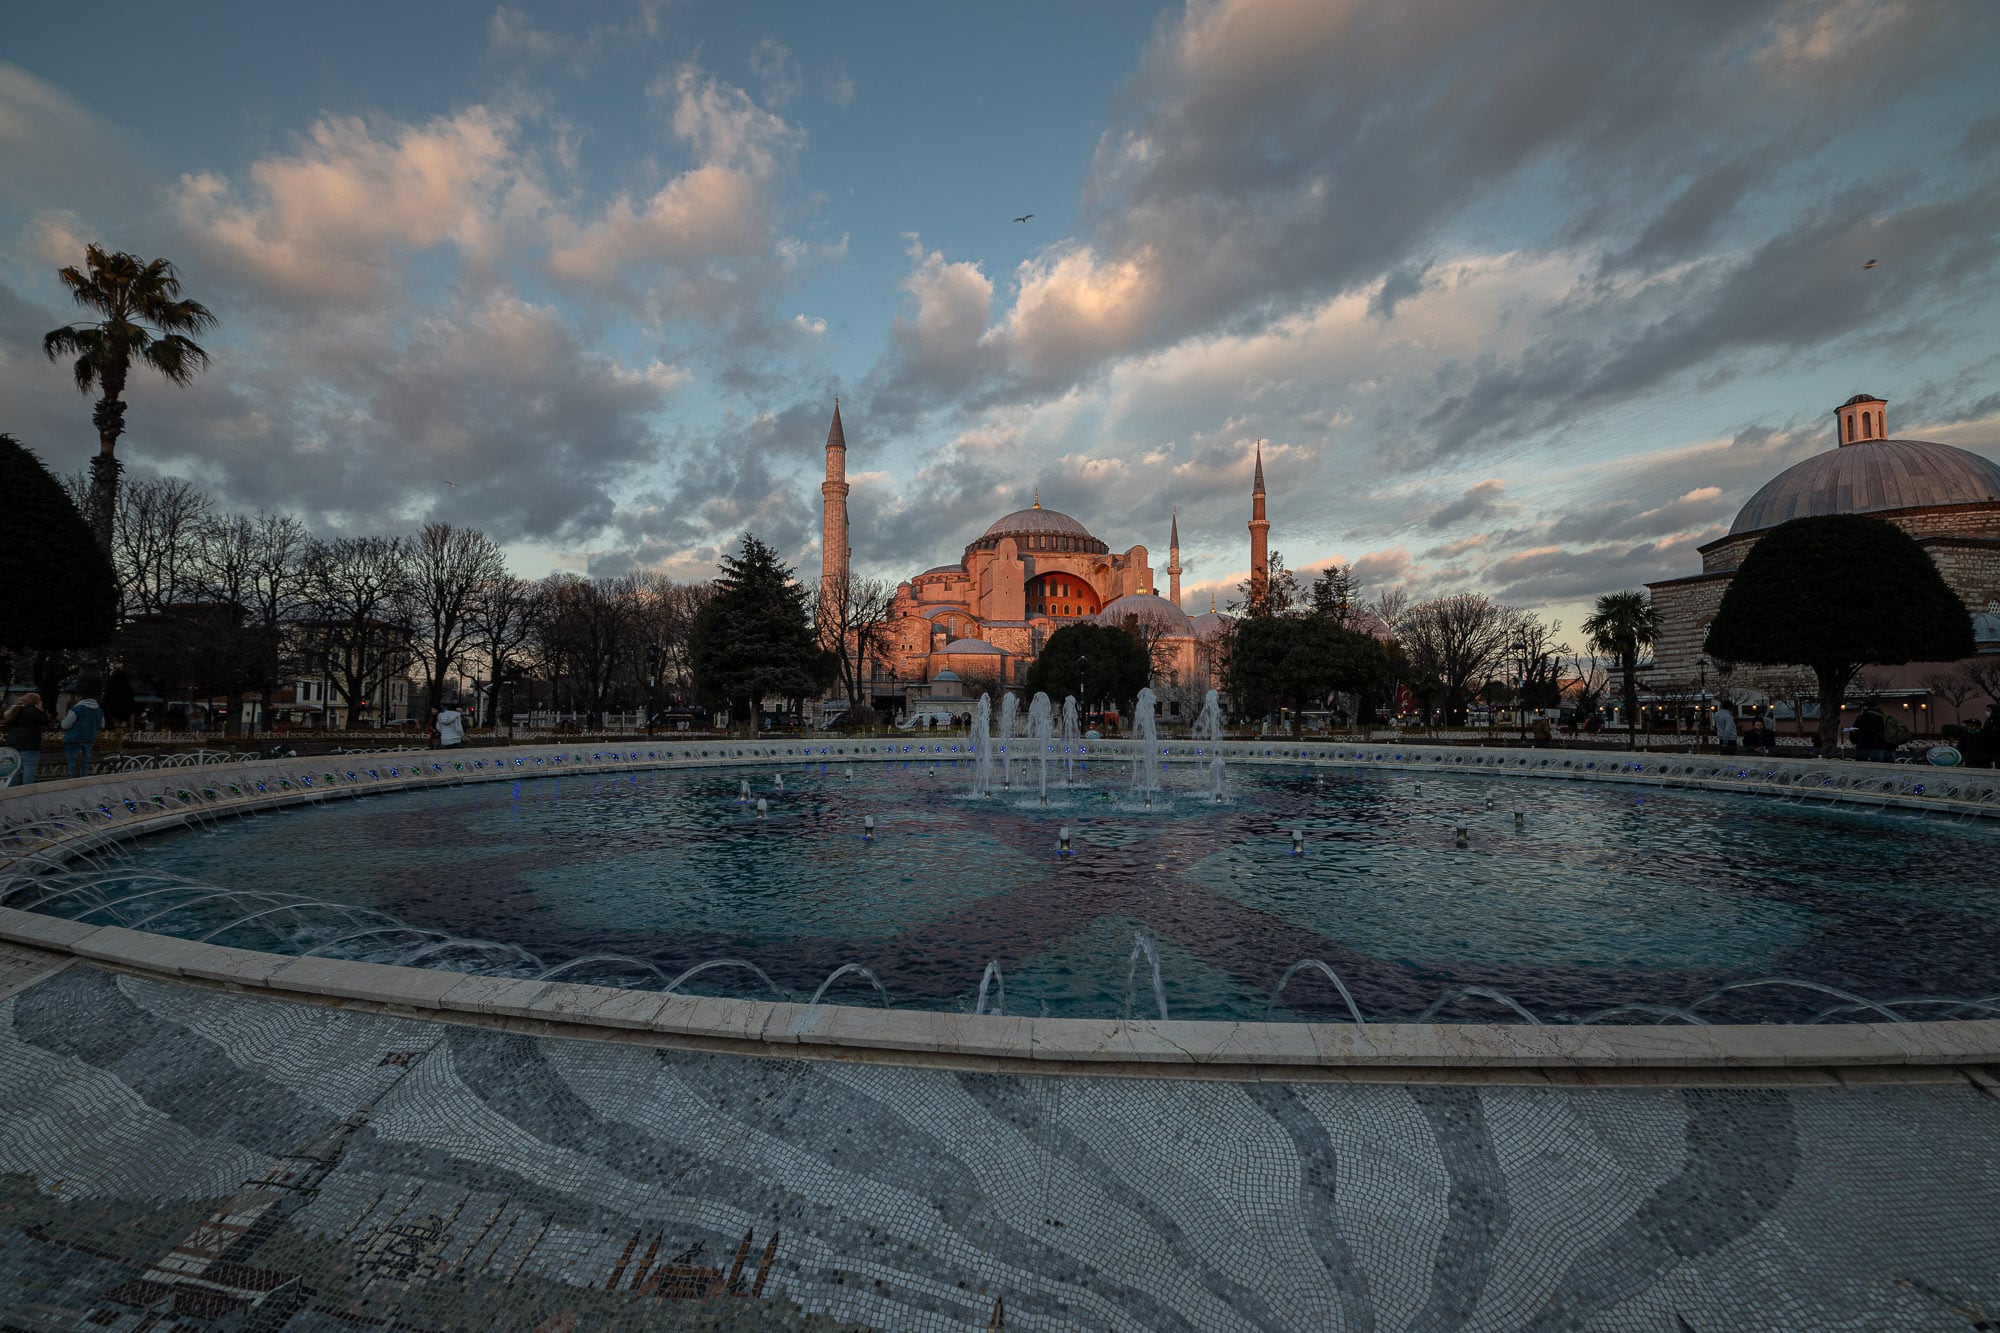 Hagia Sophia in the evening sun